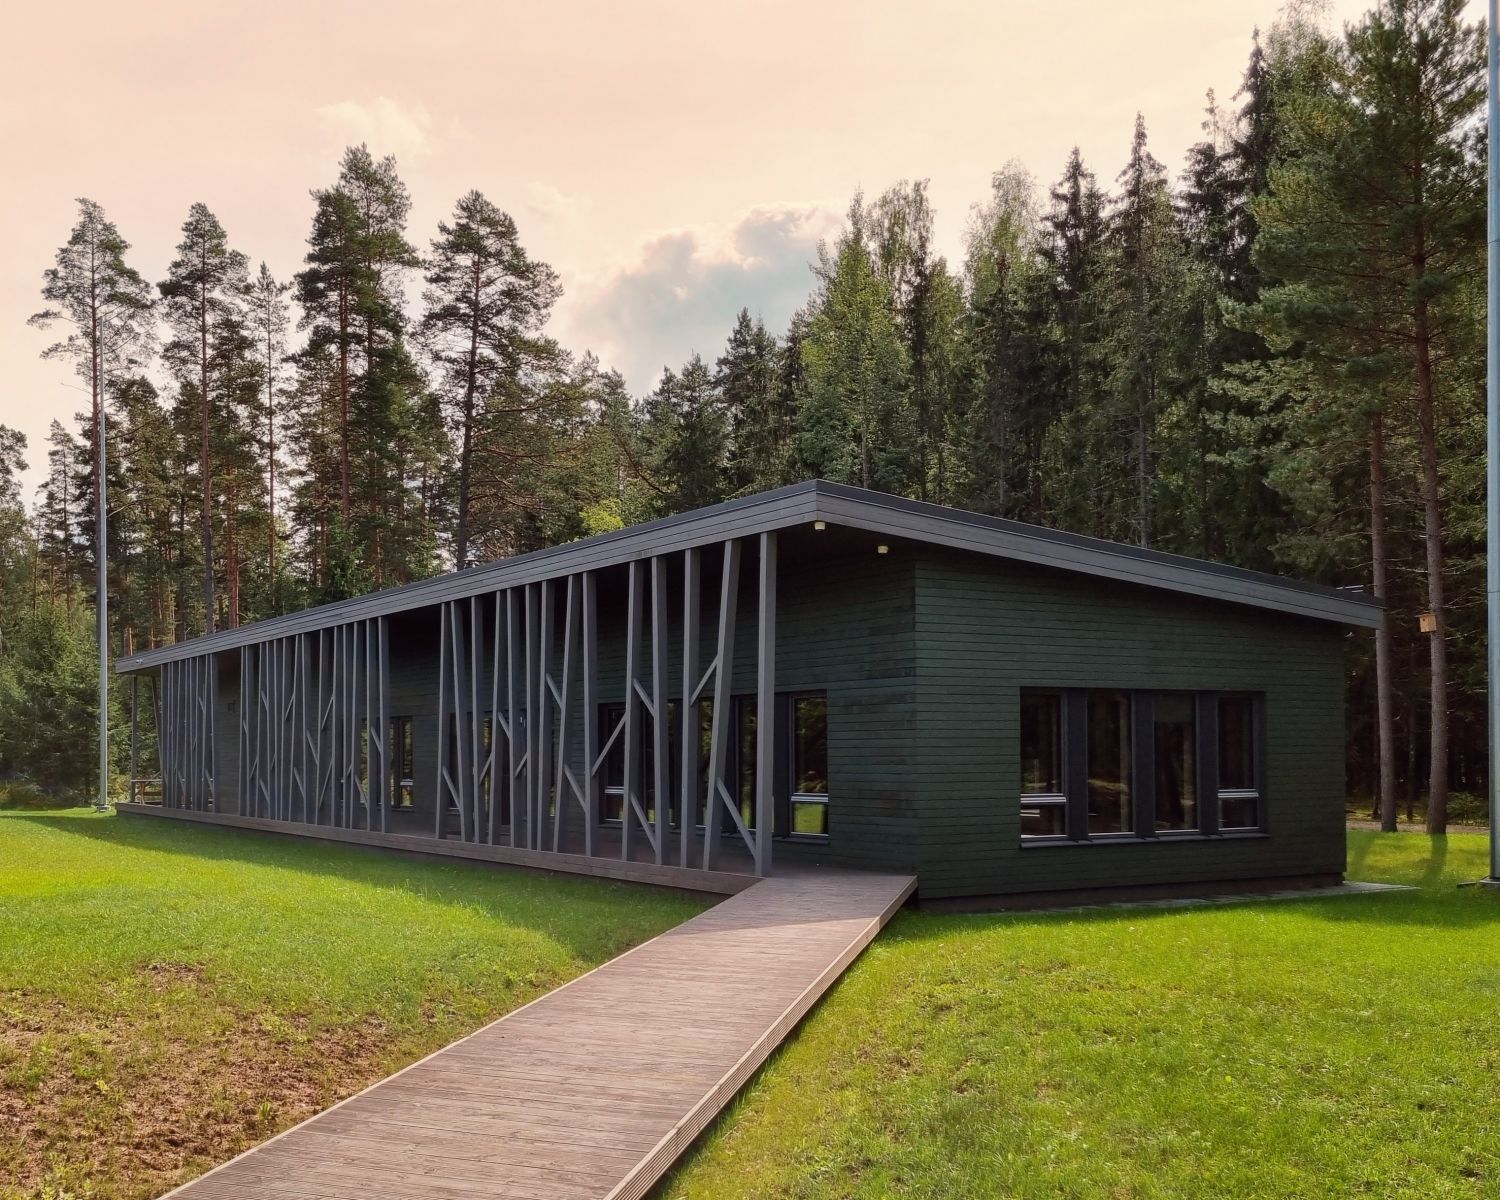 Amatu māja - Rīgas mežu izglītības centrs